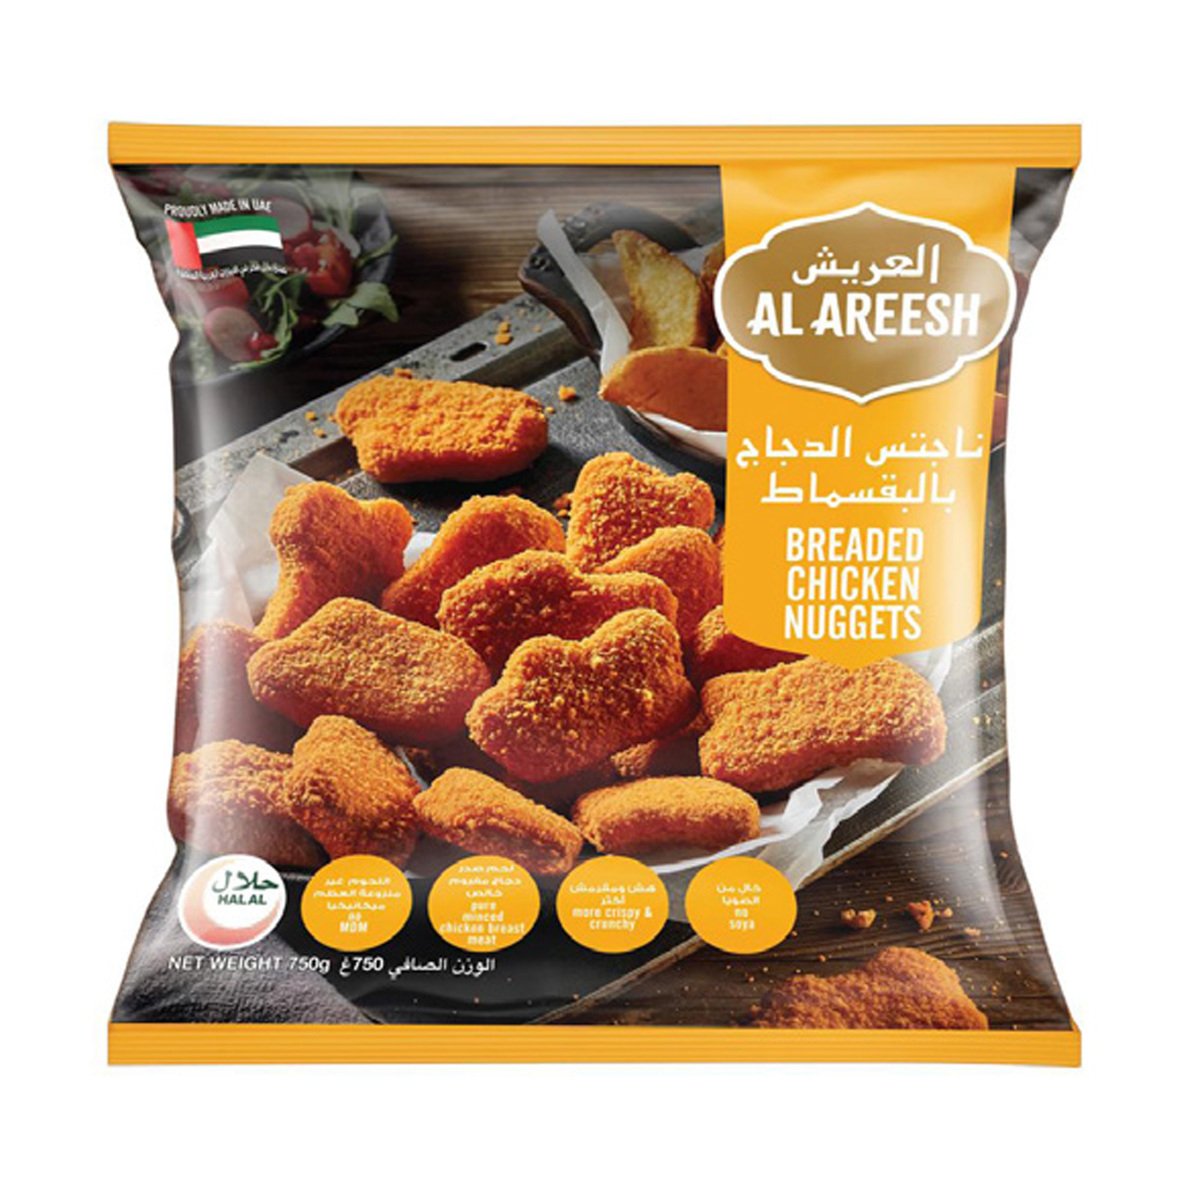 Al Areesh Breaded Chicken Nuggets 750g